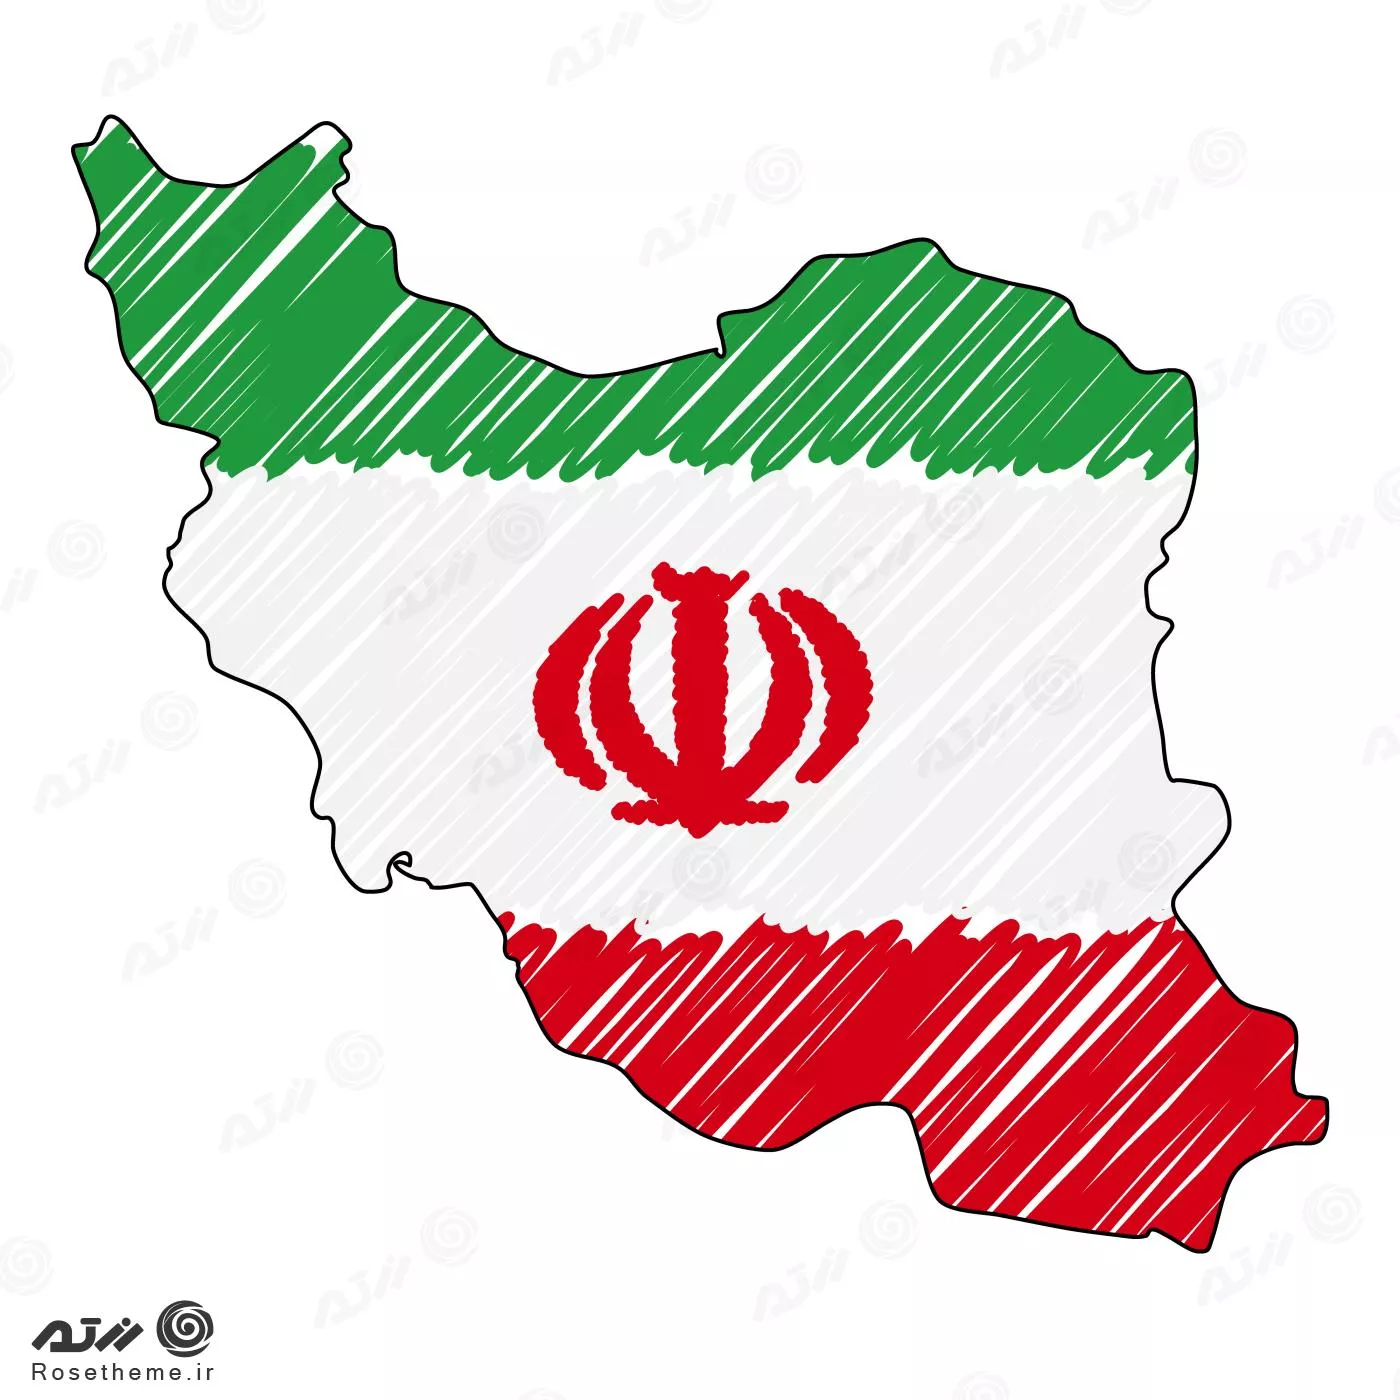 وکتور EPS لایه باز پرچم ایران در نقشه ایران 24357